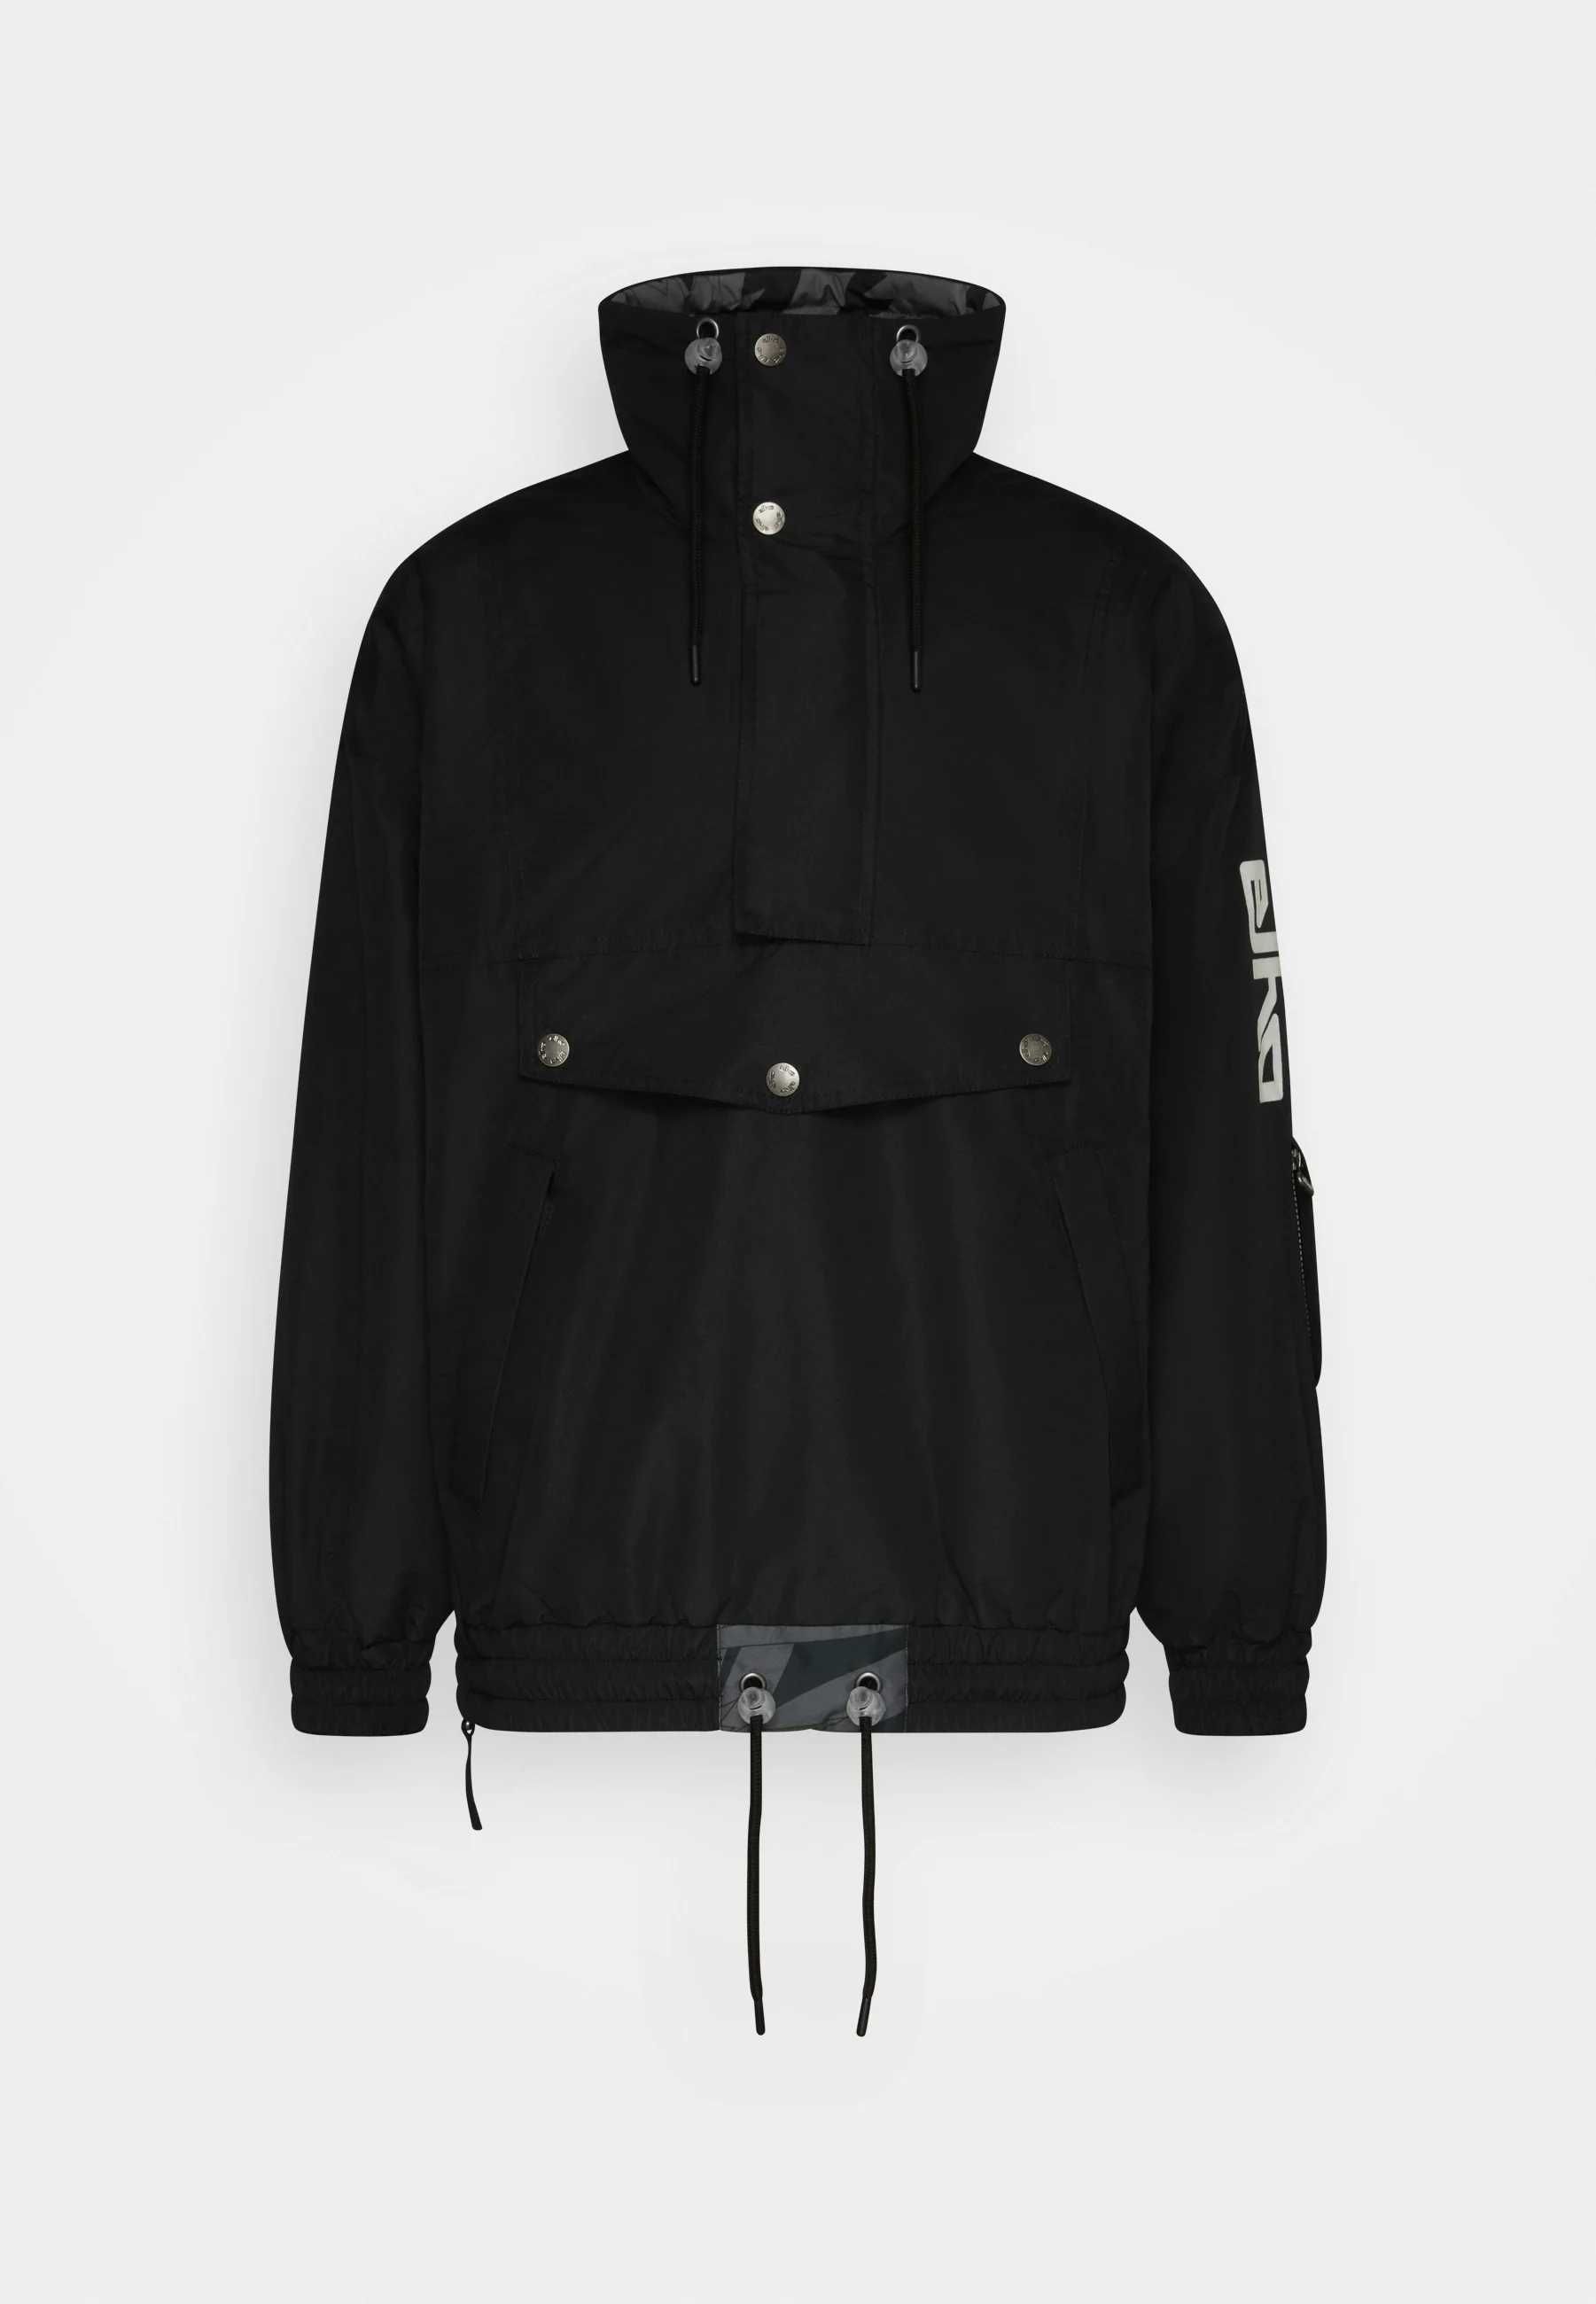 ELHO KLOSTERS 89 II UNISEX - Snowboard jacket - black 